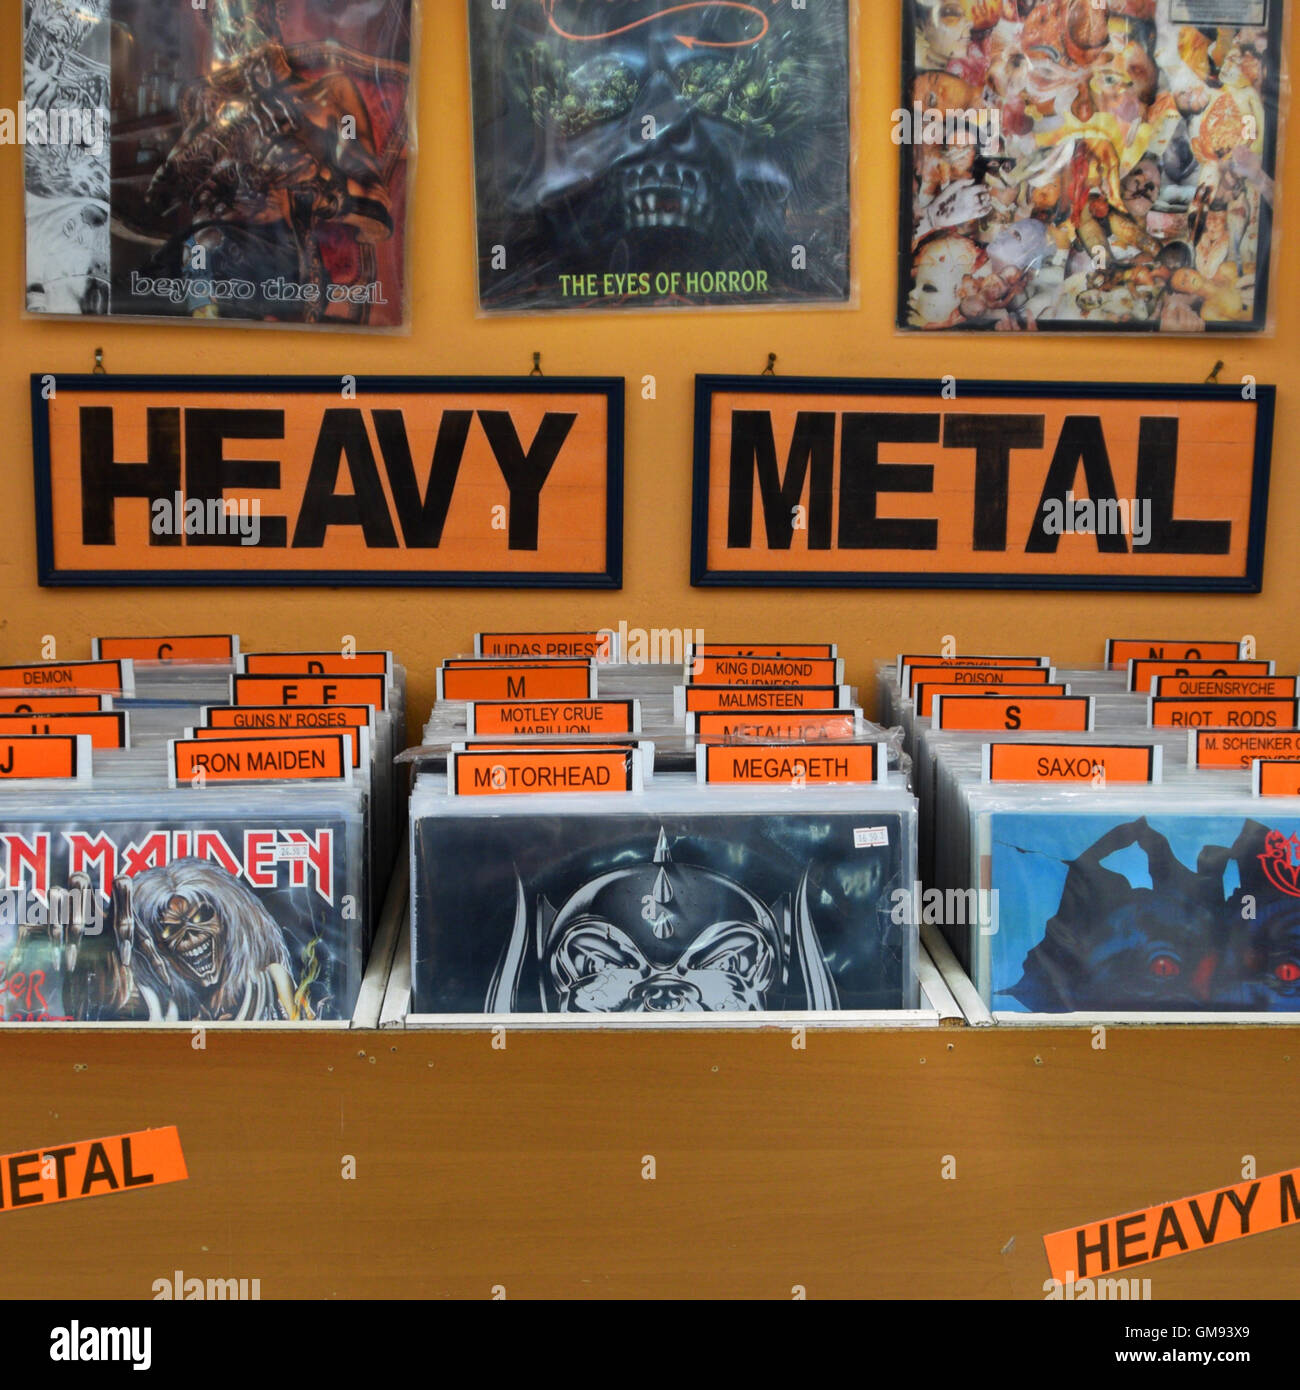 Heavy metal hard rock musica dischi in vinile a partire dagli anni ottanta, organizzate in ordine alfabetico e da bande popolari. Foto Stock